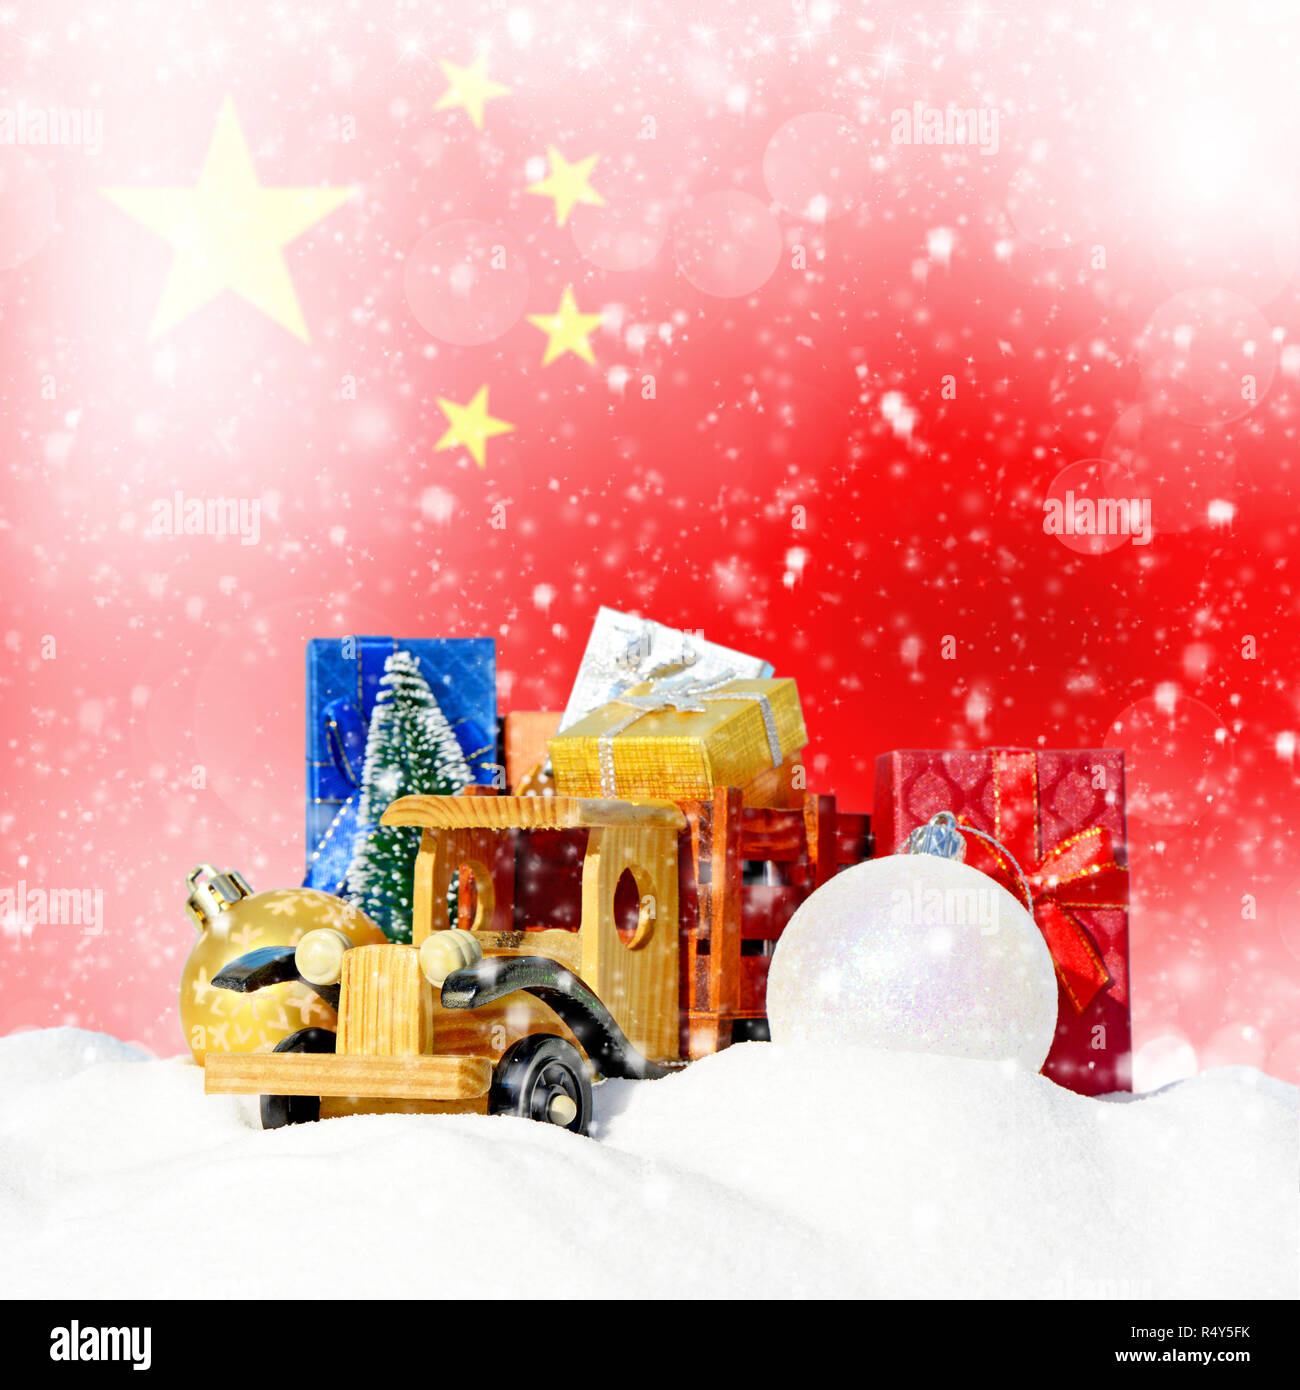 Weihnachten Hintergrund. Spielzeug-LKW mit Geschenken, Neues Jahr Tanne, Kugeln im Schneetreiben und chinesische Flagge Stockfoto